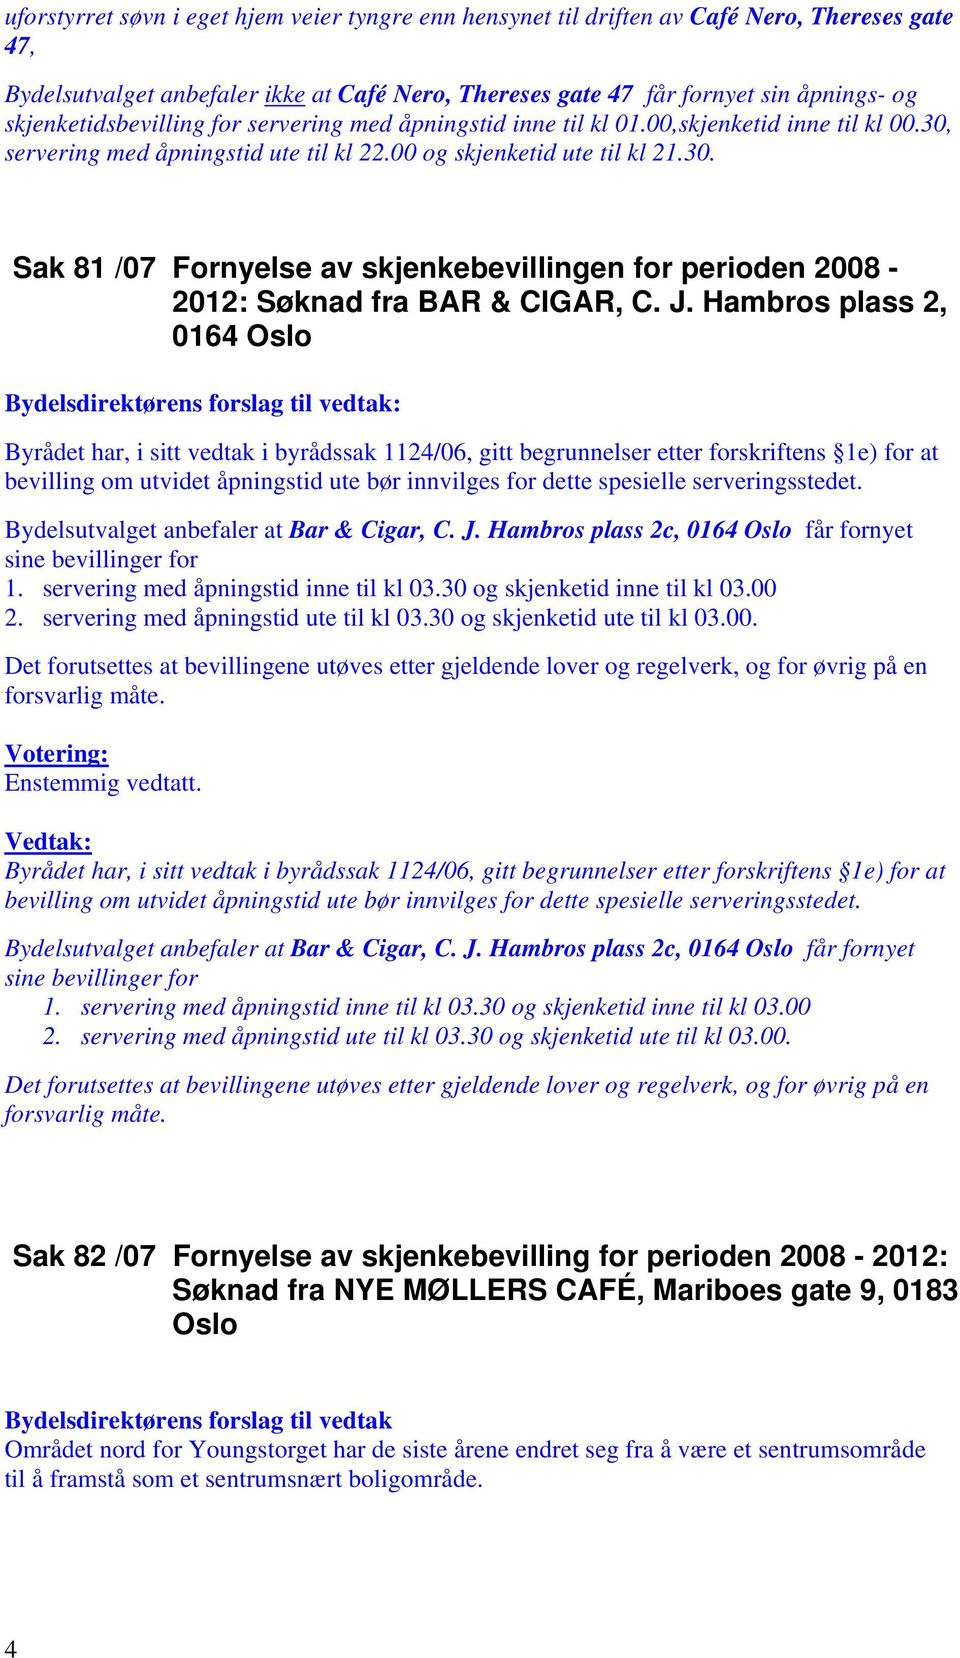 J. Hambros plass 2, 0164 Oslo Byrådet har, i sitt vedtak i byrådssak 1124/06, gitt begrunnelser etter forskriftens 1e) for at bevilling om utvidet åpningstid ute bør innvilges for dette spesielle